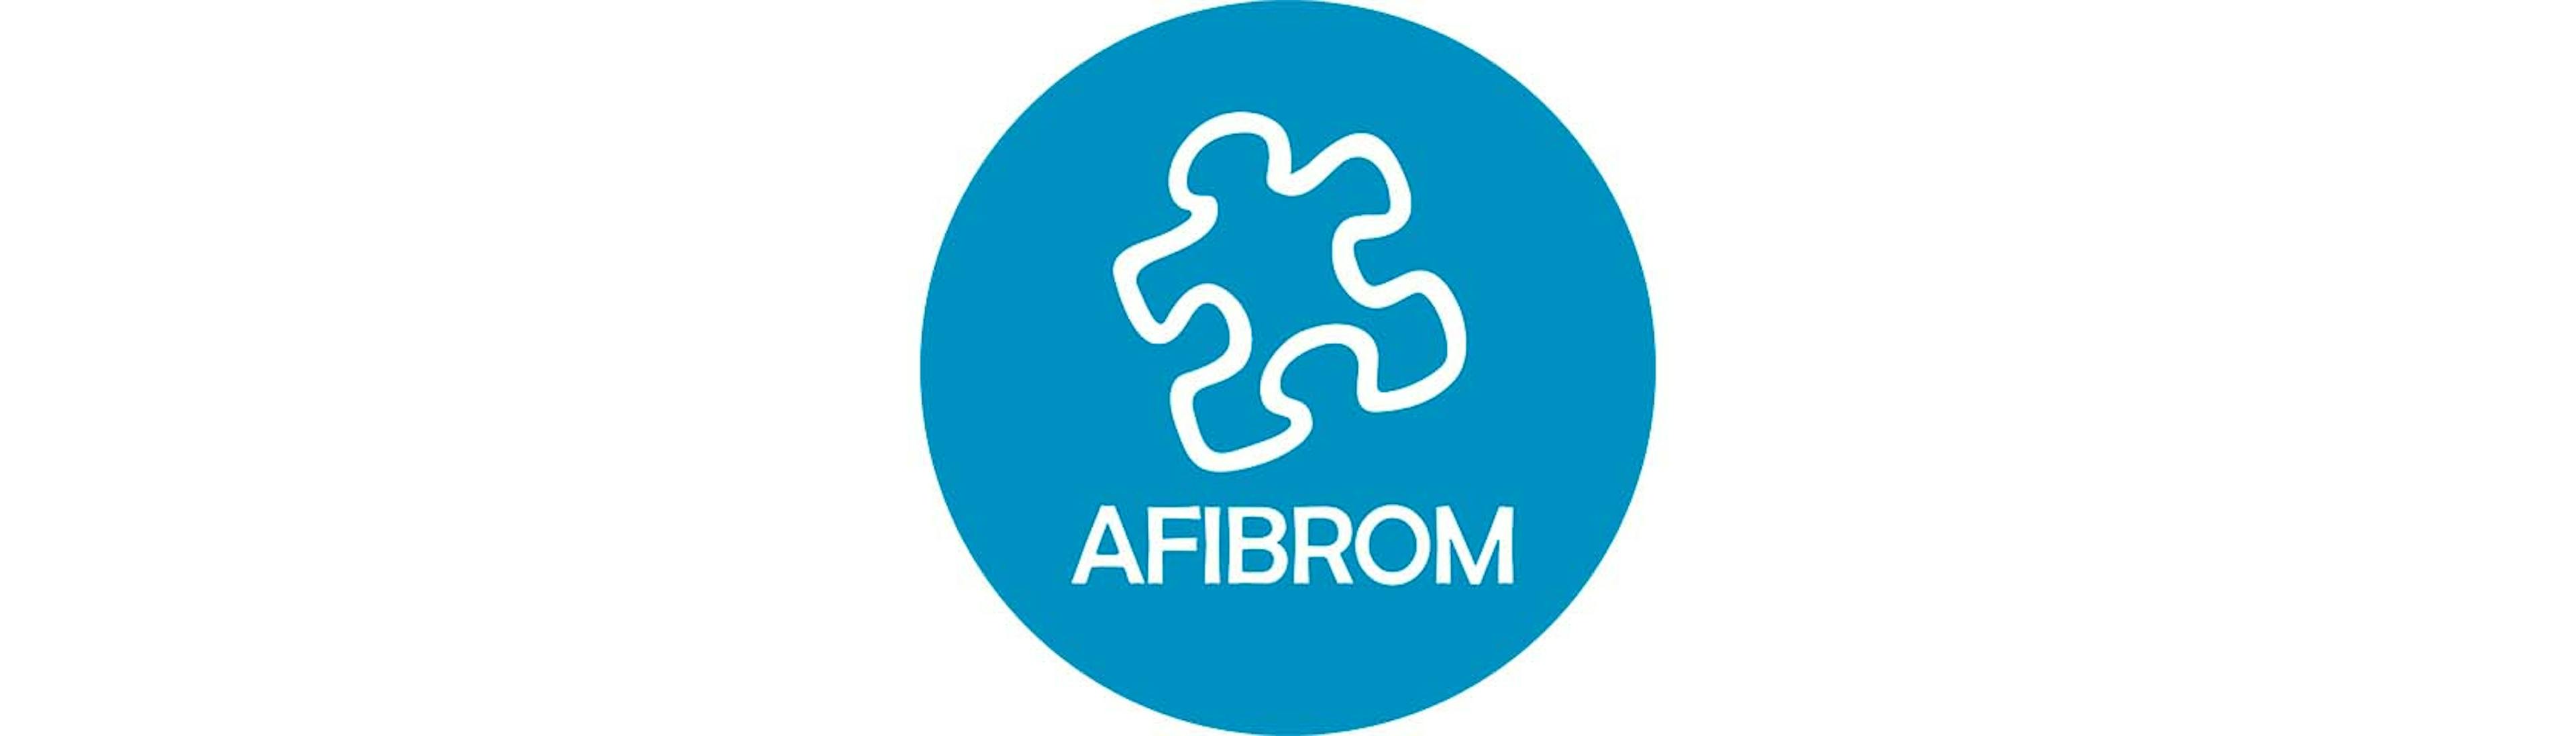 Afibrom logo asociacion ayuda personas afectadas por Fibromialgia, SFCem y SQM